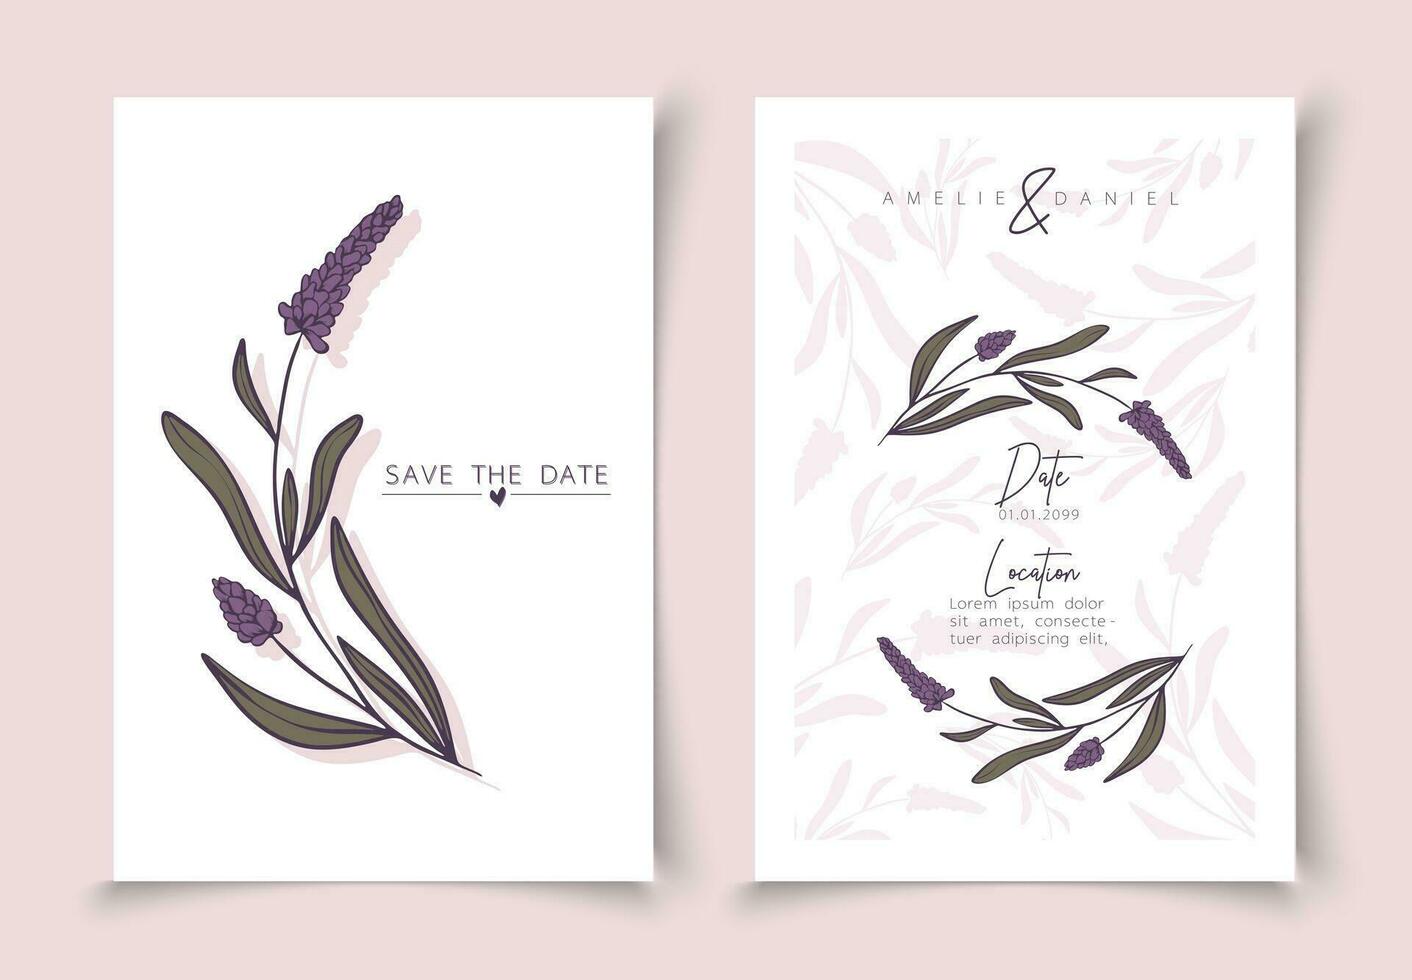 uppsättning av kort minimal hand dragen lavendel- grenar i linje konst stil. botanisk löv ram mall. redigerbar vektor design kort för reklam, omslag, bröllop inbjudan, affisch eller spara de datum.